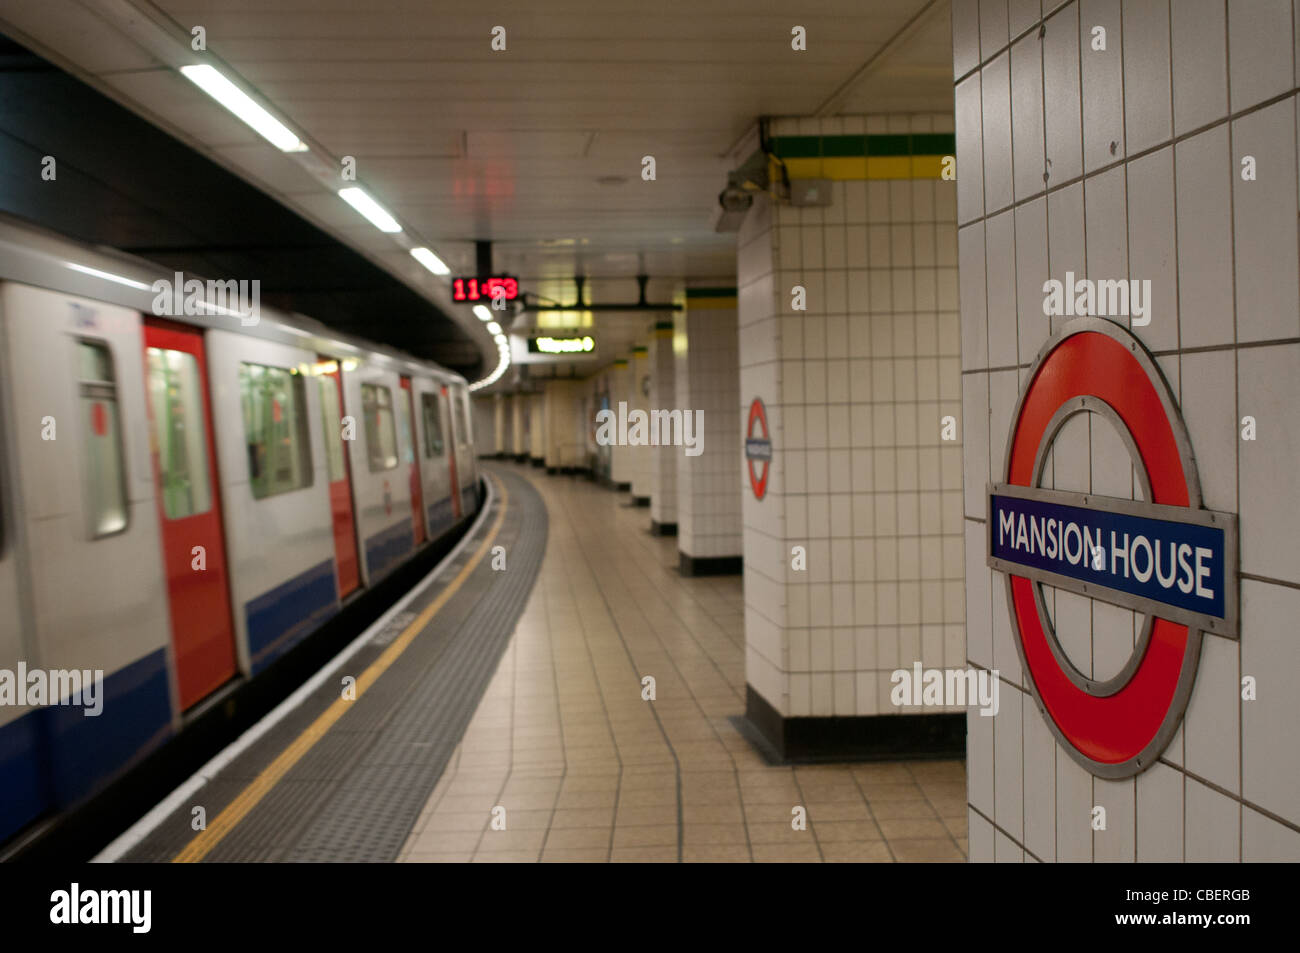 La station de métro Mansion House, Londres, Angleterre, Royaume-Uni Banque D'Images